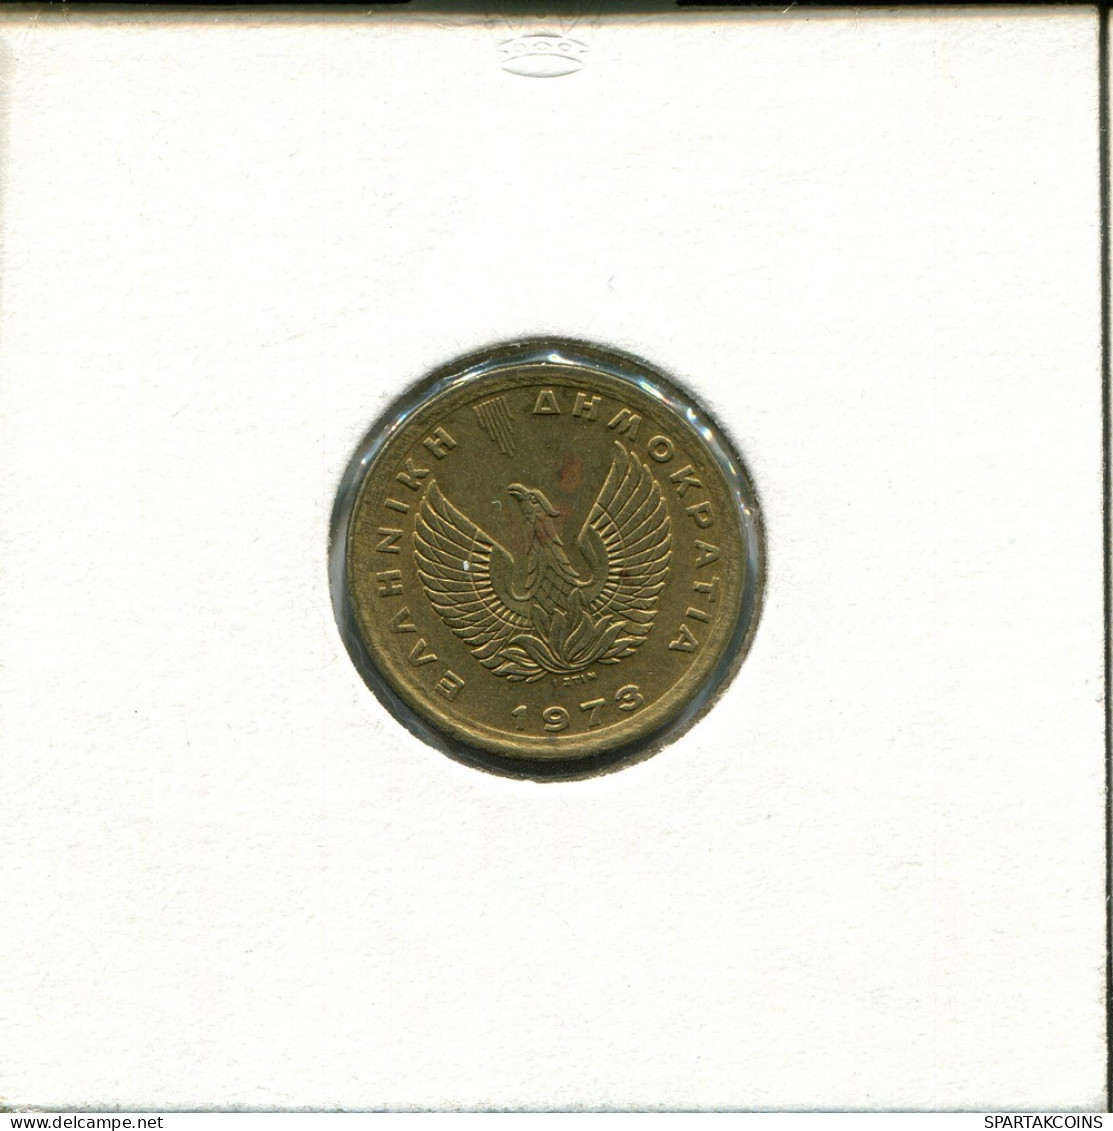 50 LEPTA 1973 GRIECHENLAND GREECE Münze #AS769.D.A - Griekenland